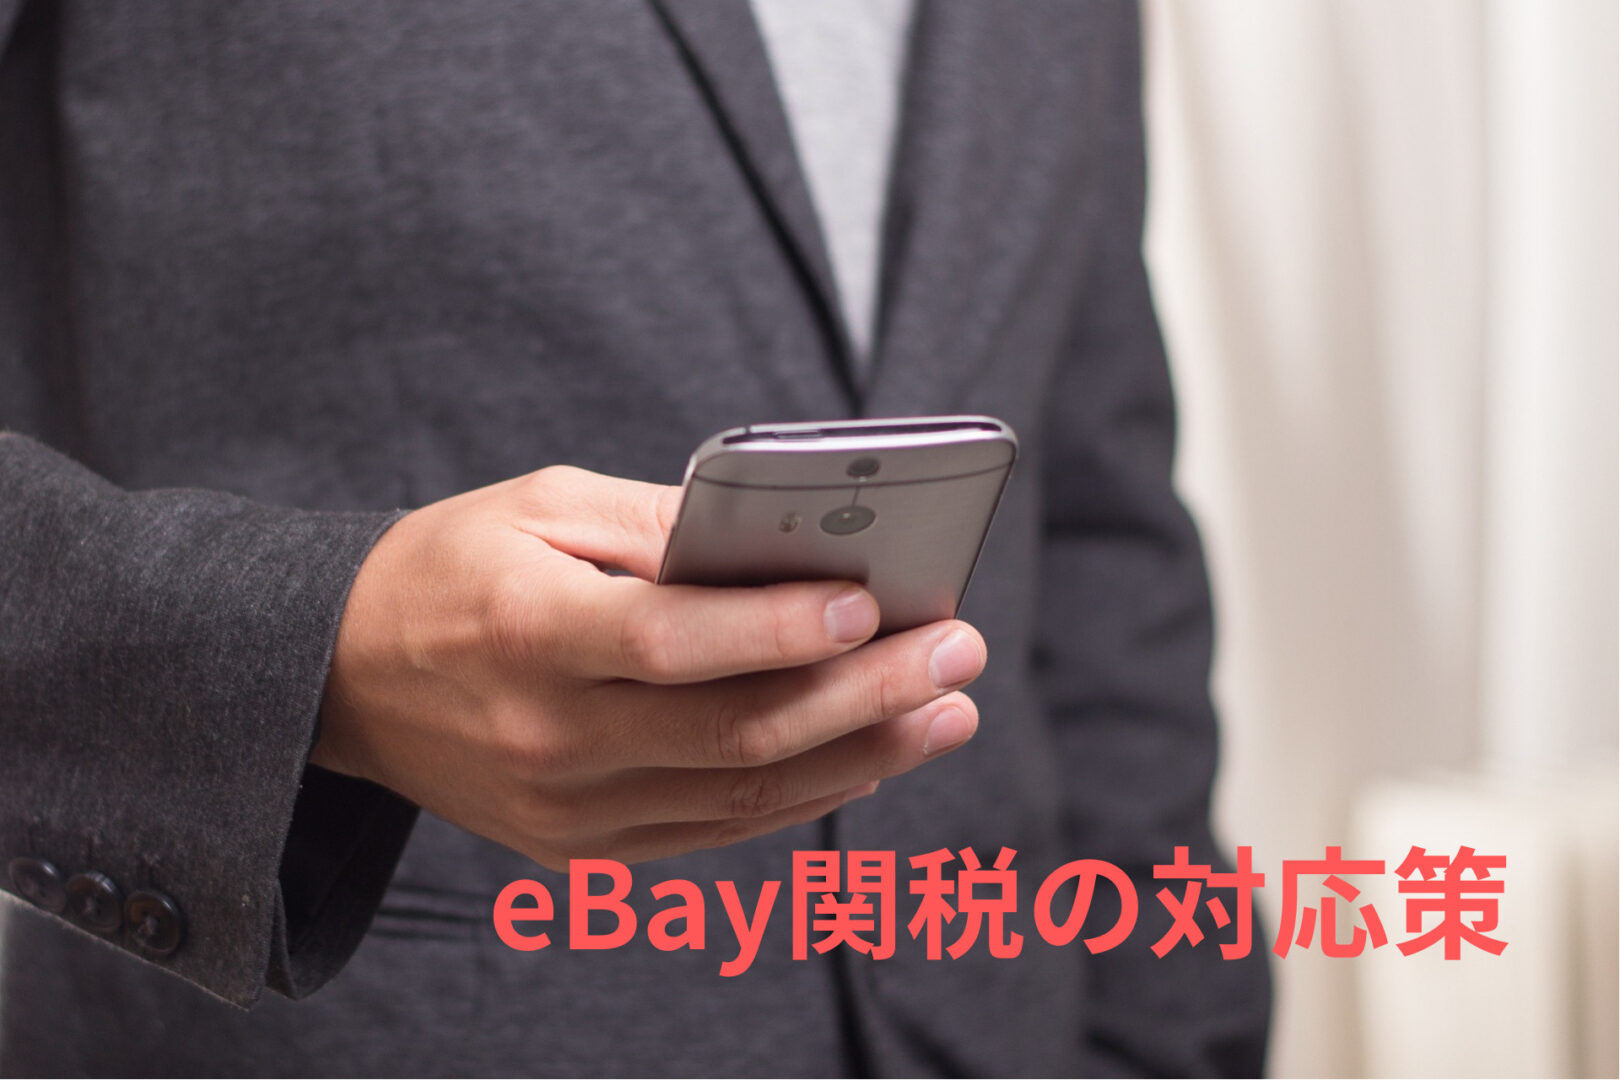 eBay関税の対応策